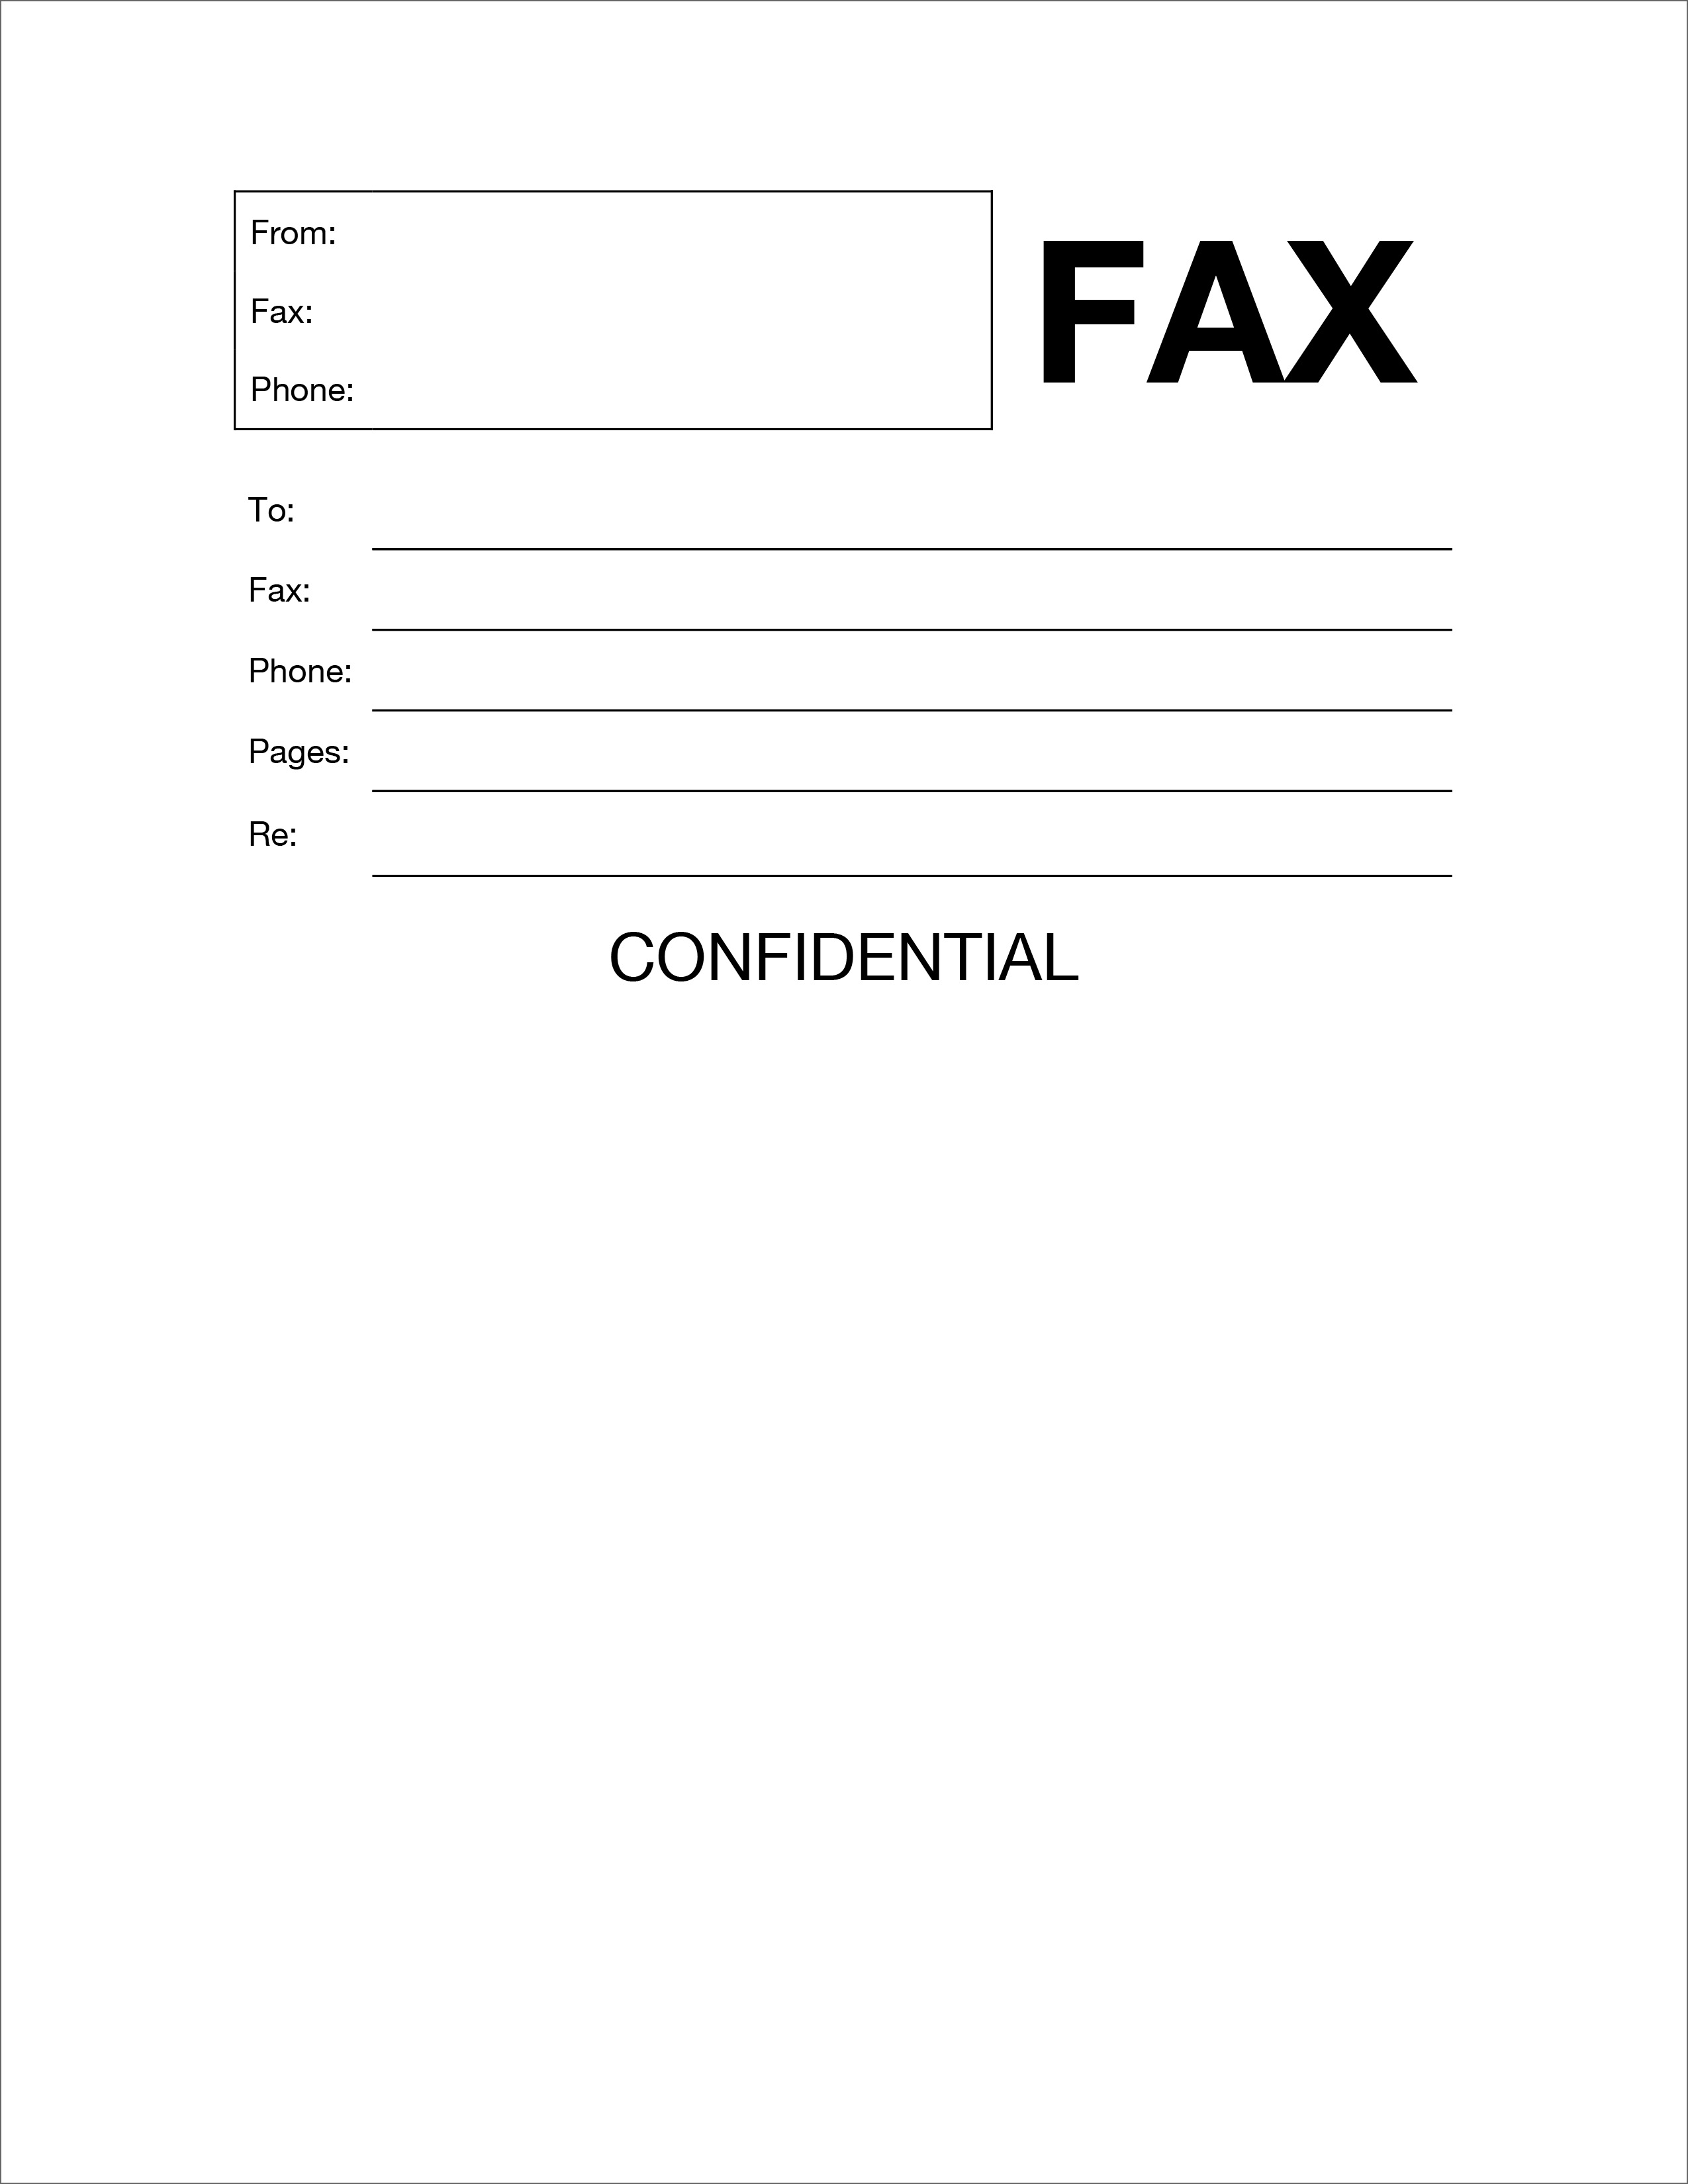 fax-coversheet-template